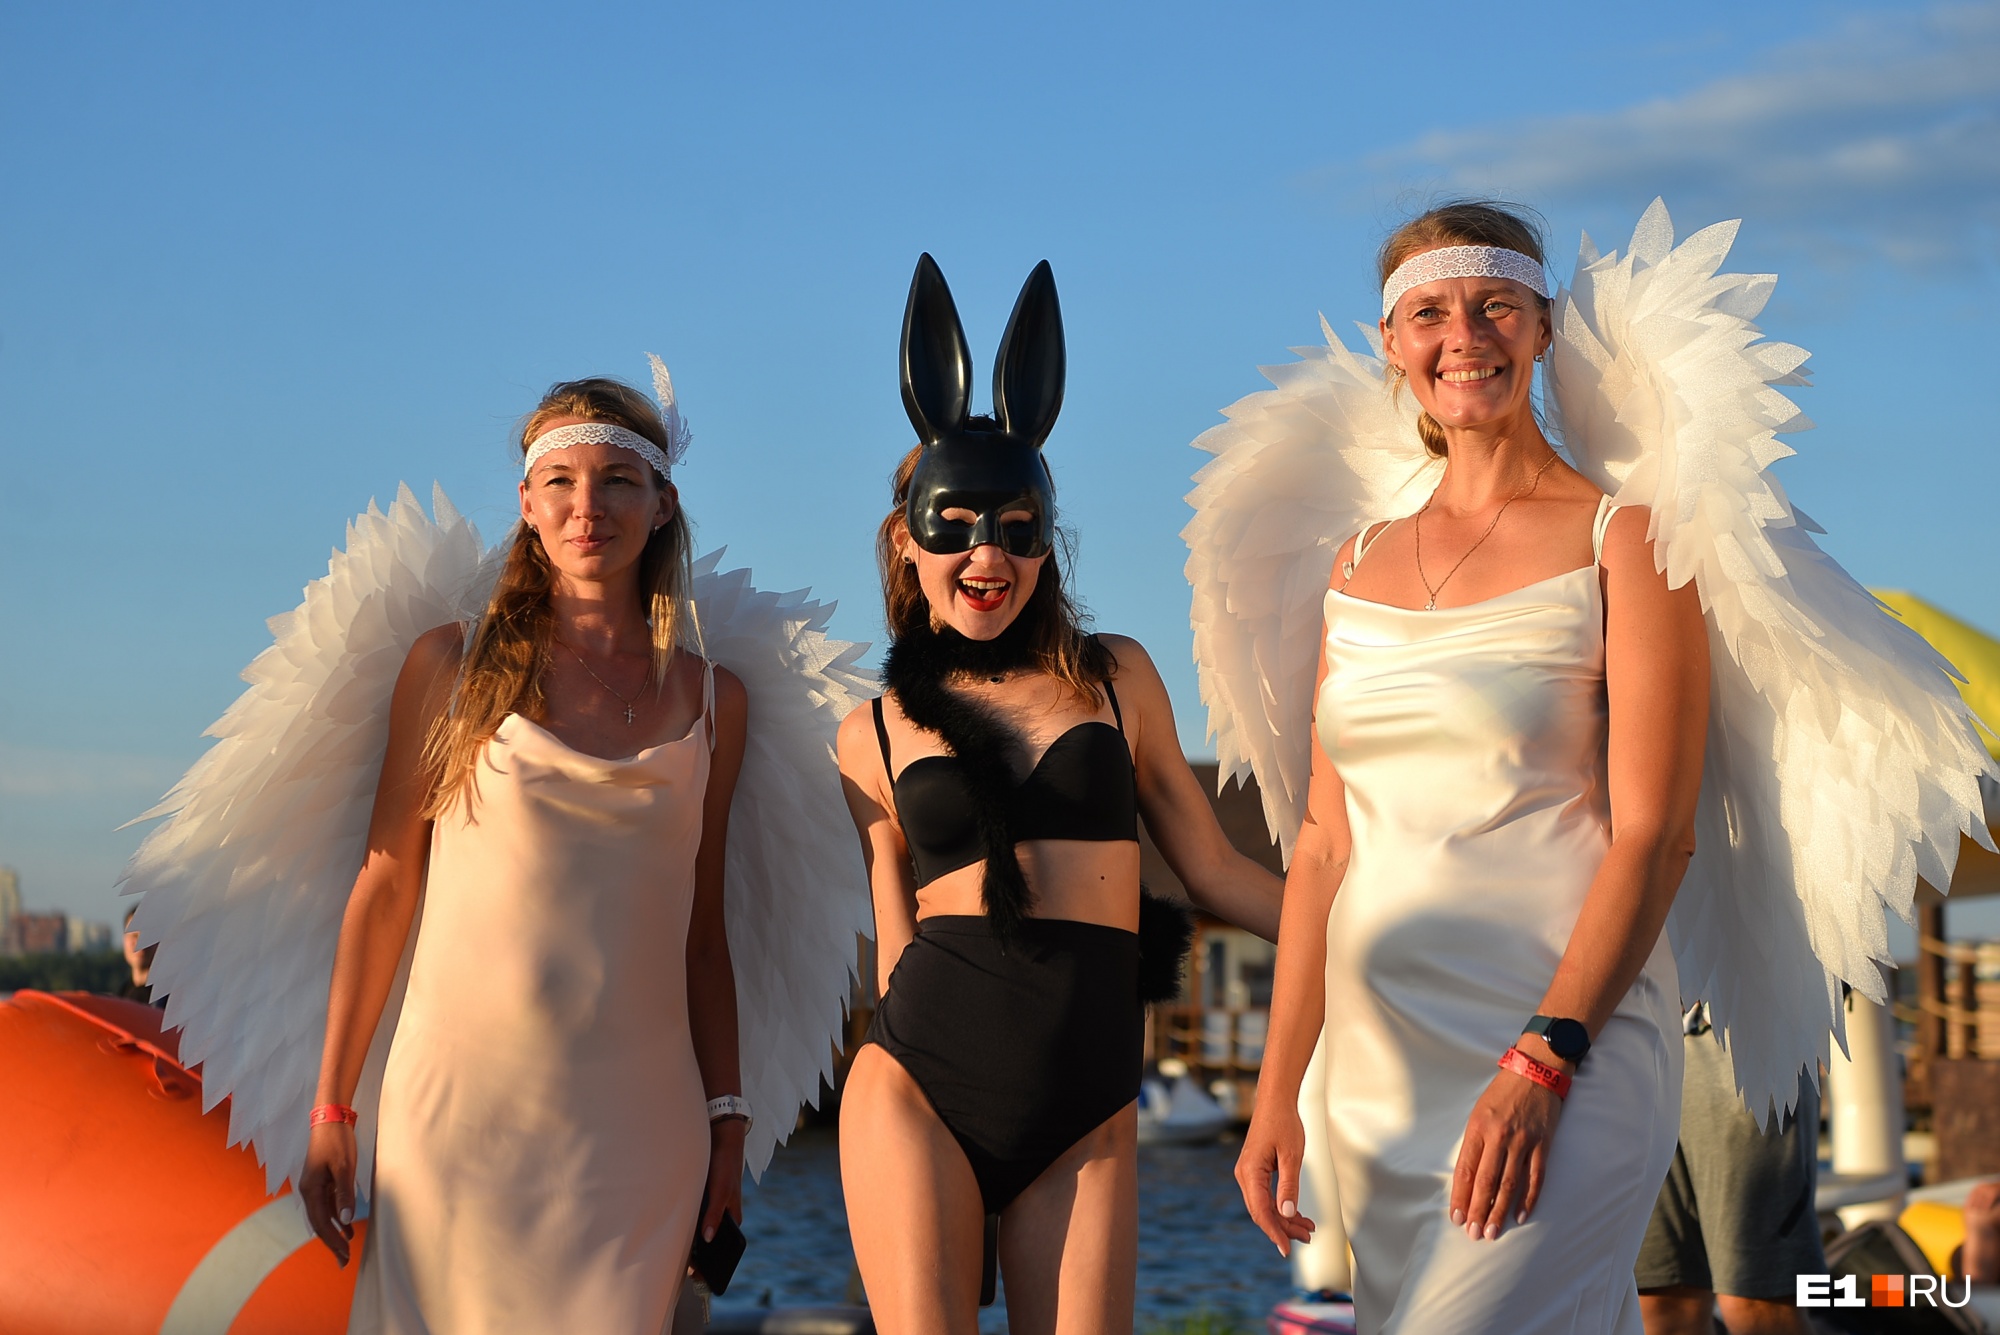 Екатеринбуржцы в безумных нарядах устроили заплыв на Визовском пруду: 30 ярких фото